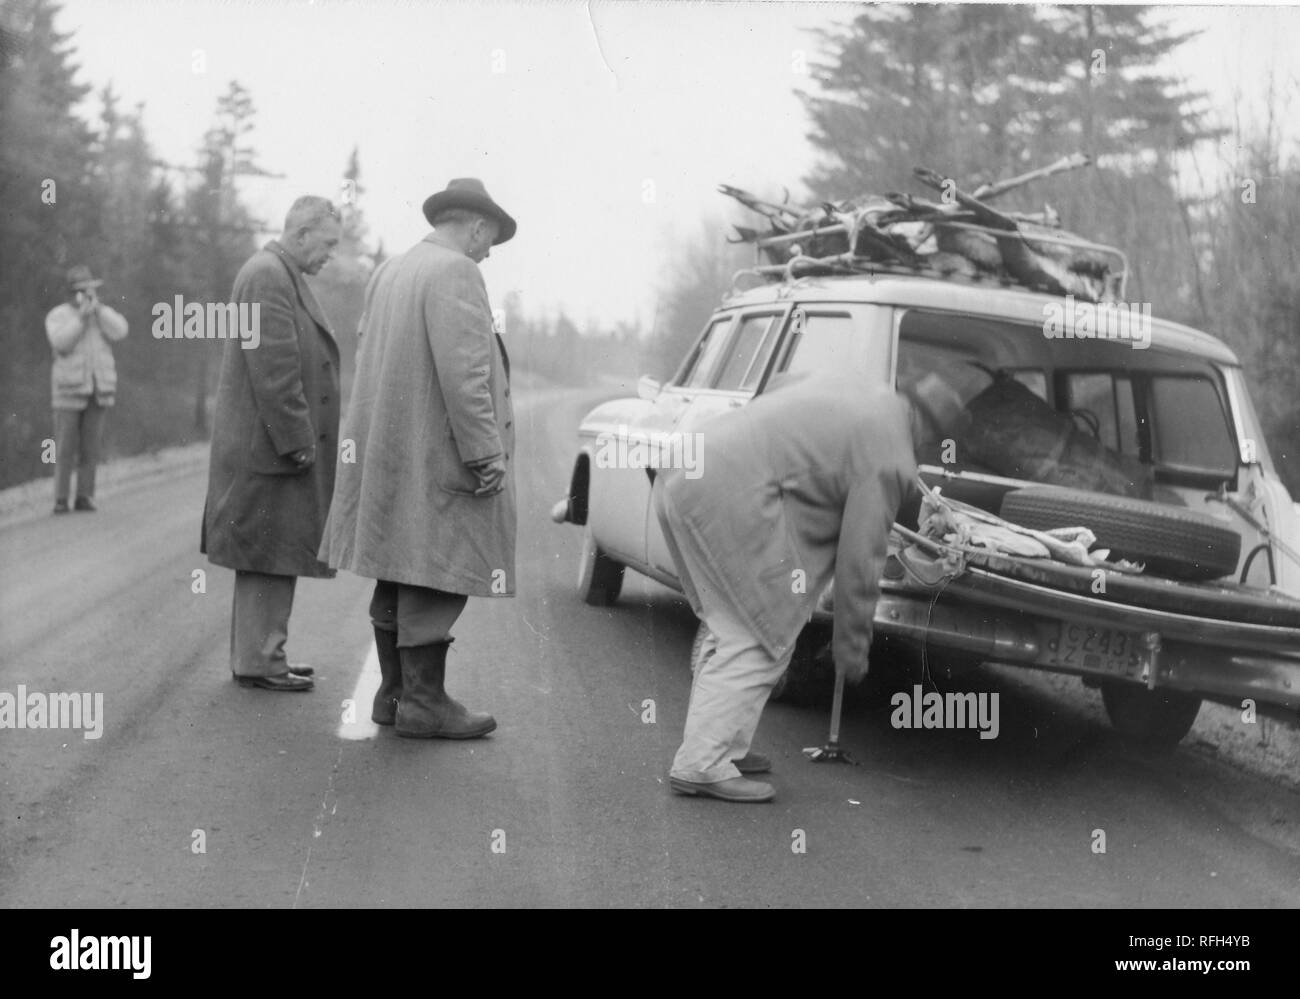 Schwarz-weiß Foto von vier Männern, jeder trägt einen Mantel oder Jacke,  die auf einem leeren Strecke von der Straße mit einem geparkten Kombi, die  über die Körper von mehreren Hirsch in seiner